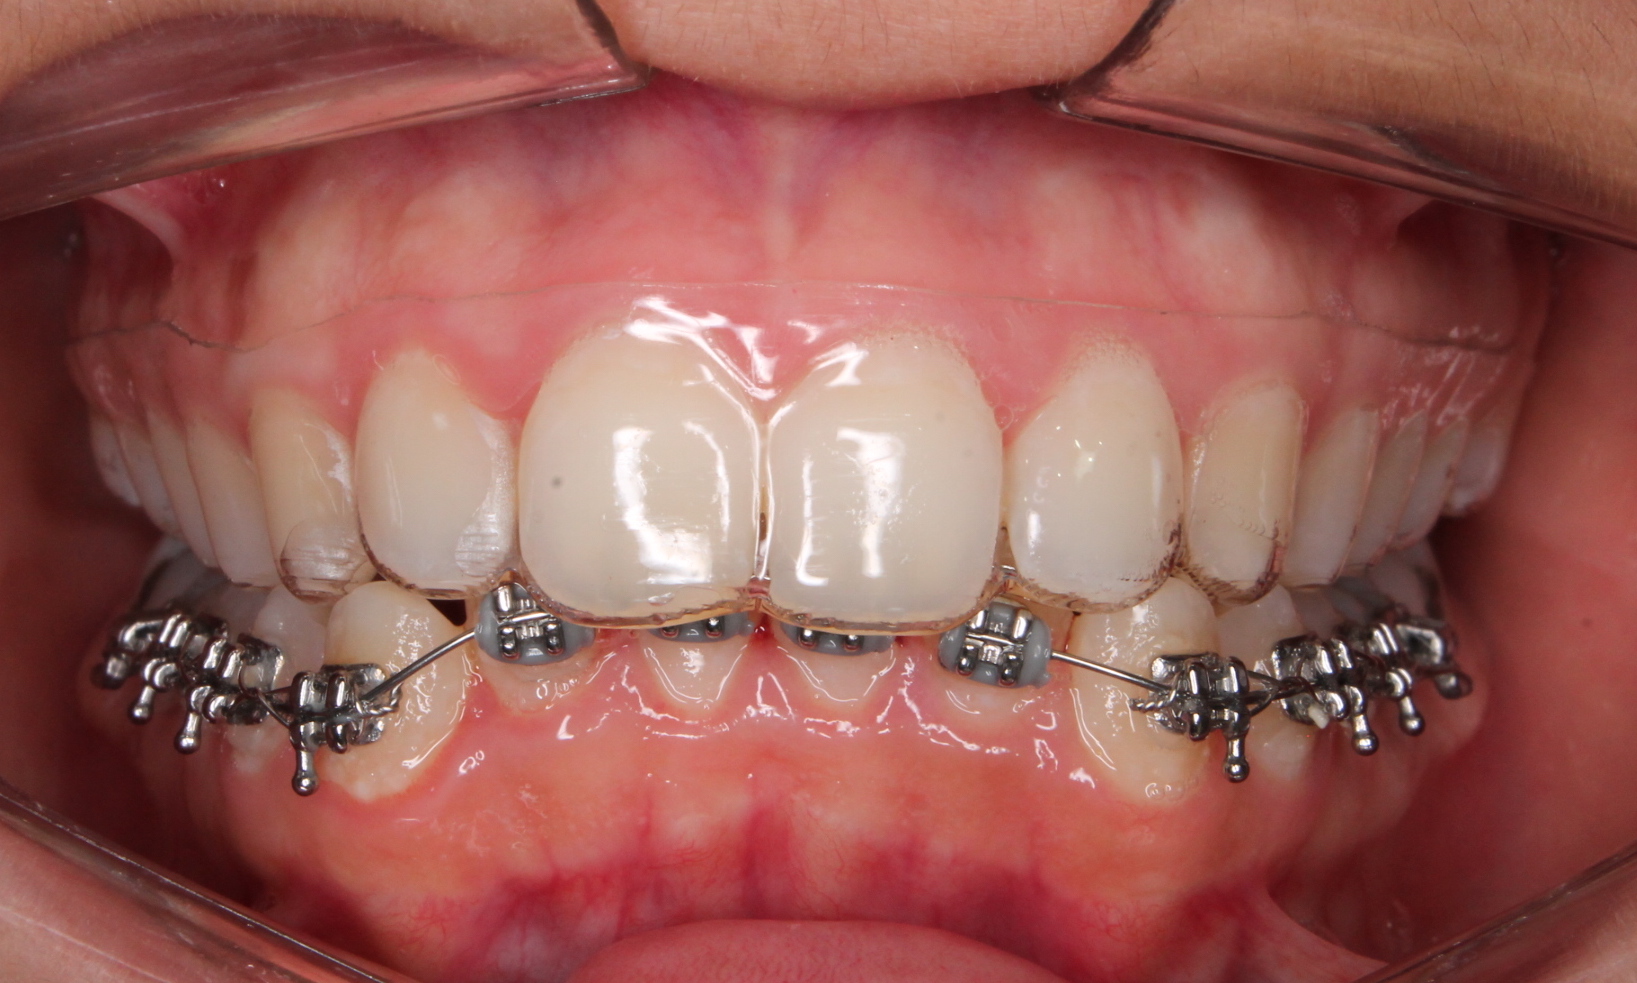 Nova Geração de Alinhadores em Ortodontia – Mais Rápido e